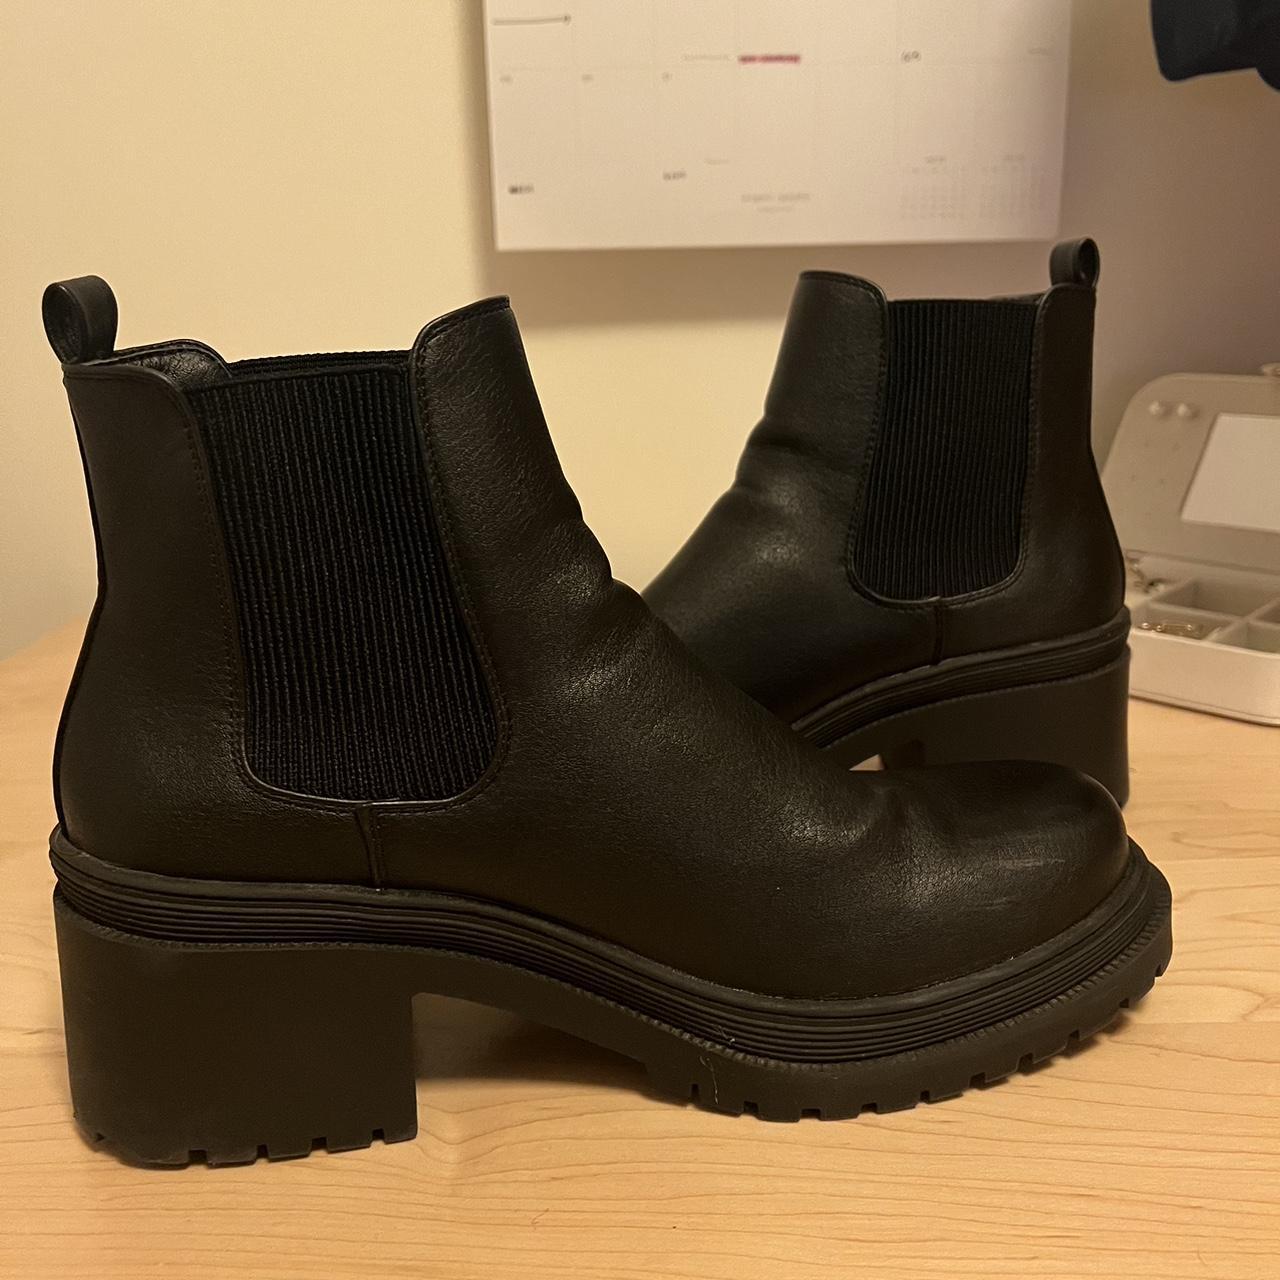 Black Ankle Healed Platform Boots - Super cute... - Depop